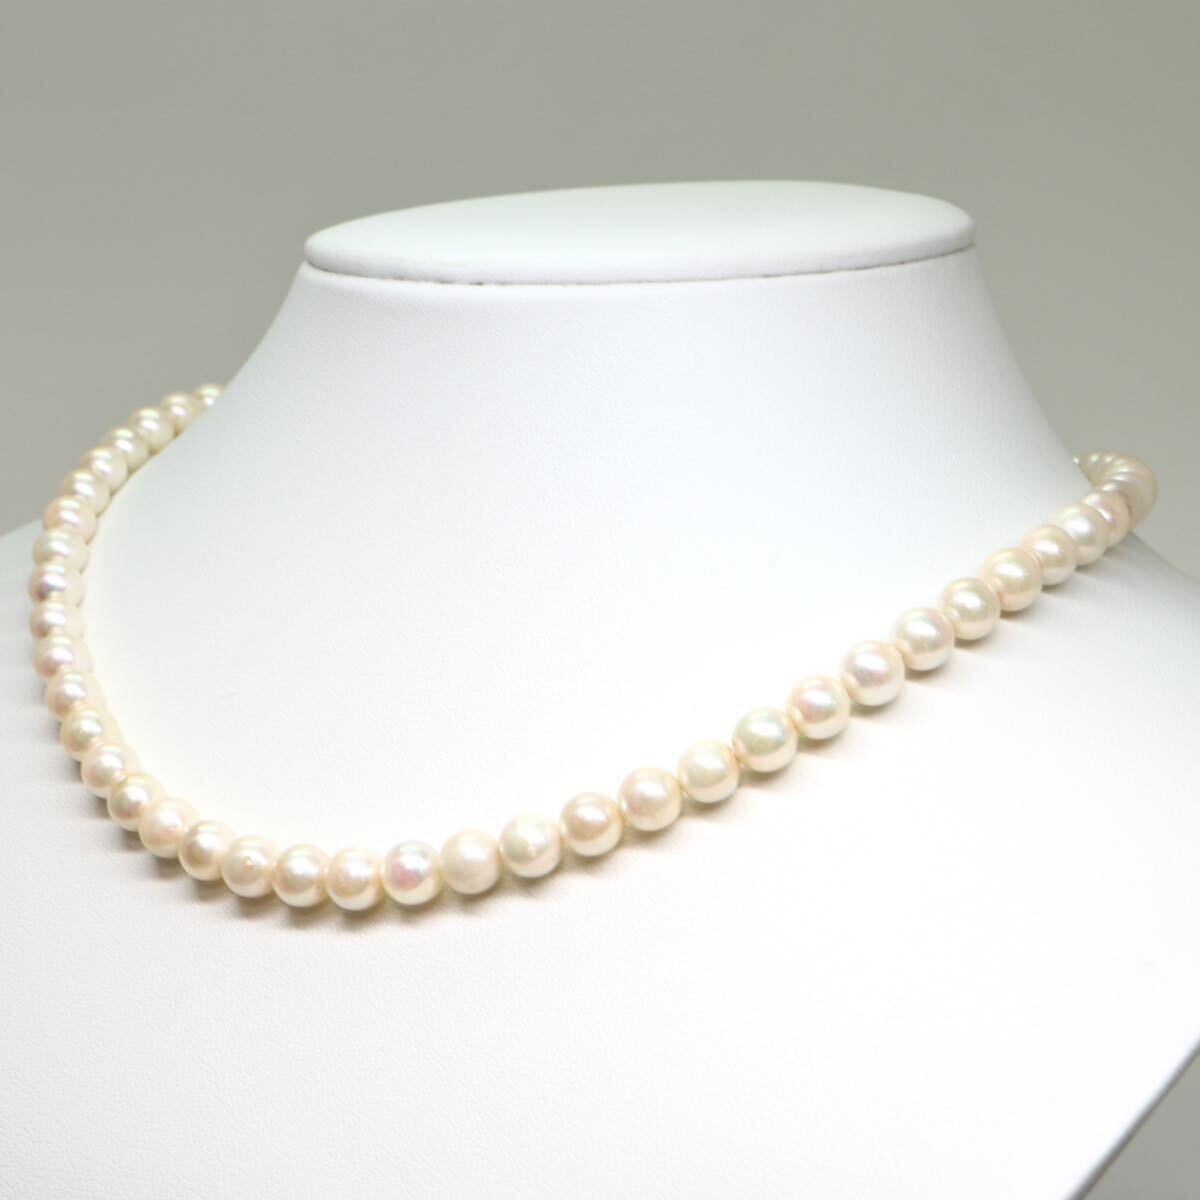 《アコヤ本真珠ネックレス》A 約6.5-7.0mm珠 28.5g 約41.5cm pearl necklace ジュエリー jewelry DA0/DA0の画像3